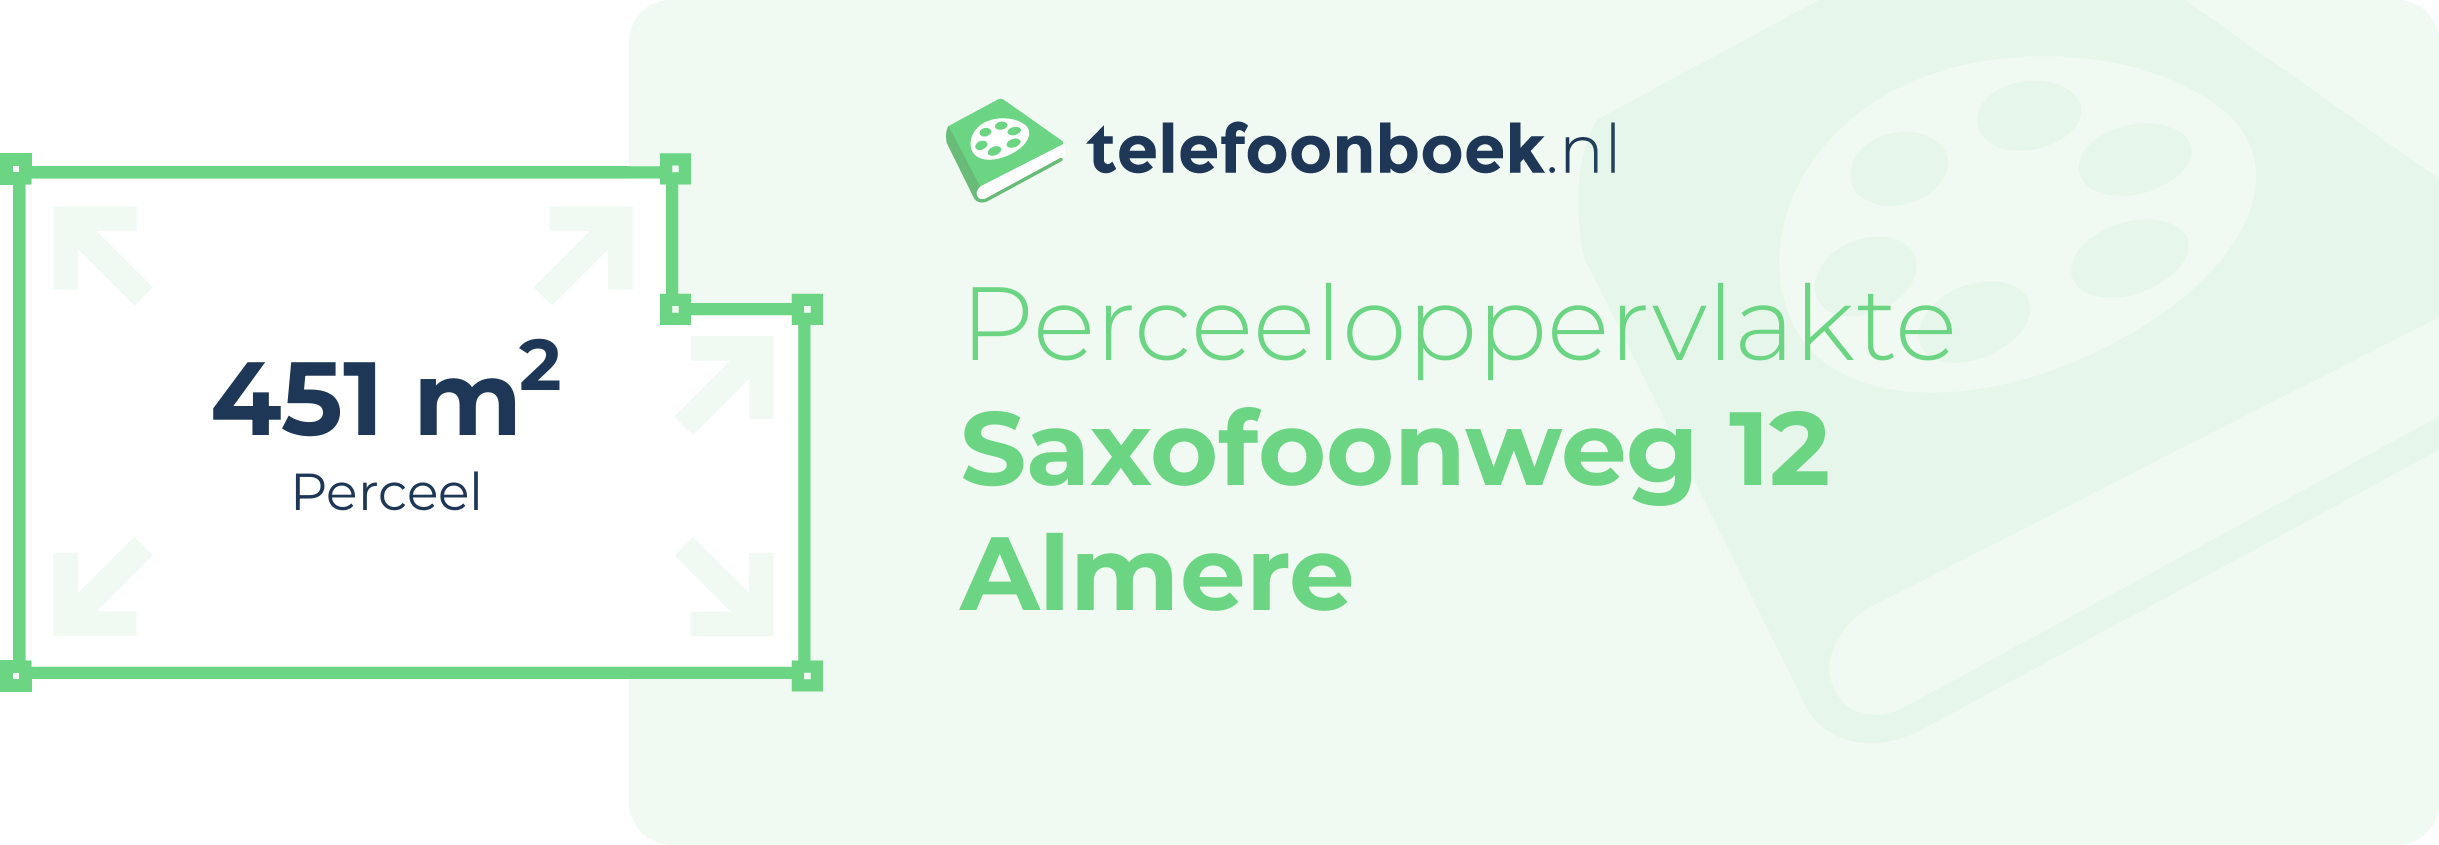 Perceeloppervlakte Saxofoonweg 12 Almere